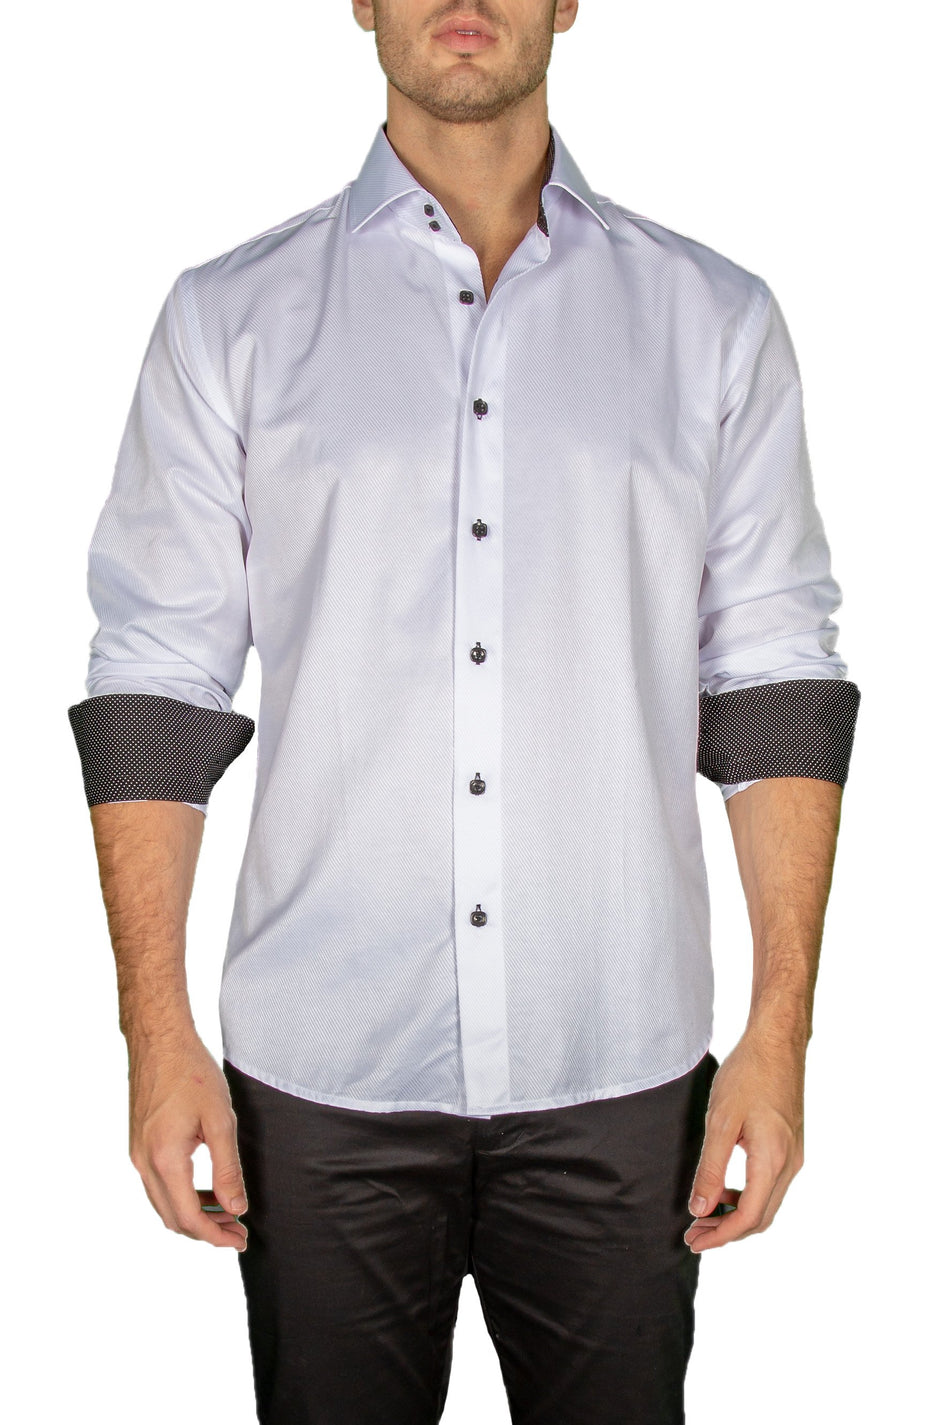 172475-mens-white-button-up-long-sleeve-dress-shirt